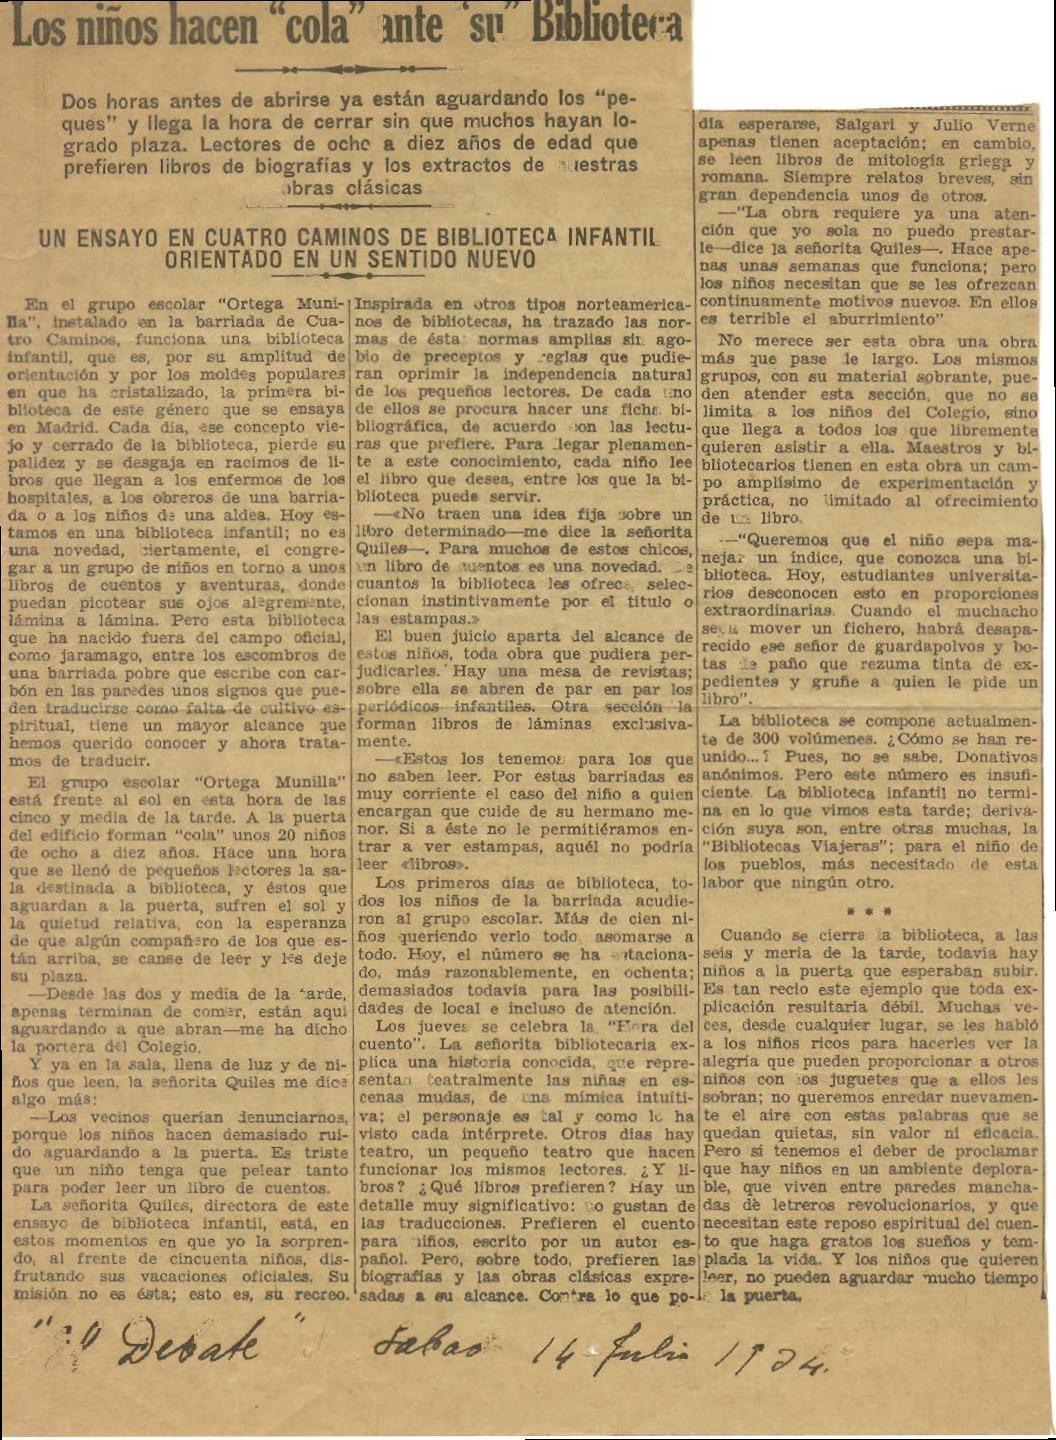 El Debate, 14 de julio de 1934